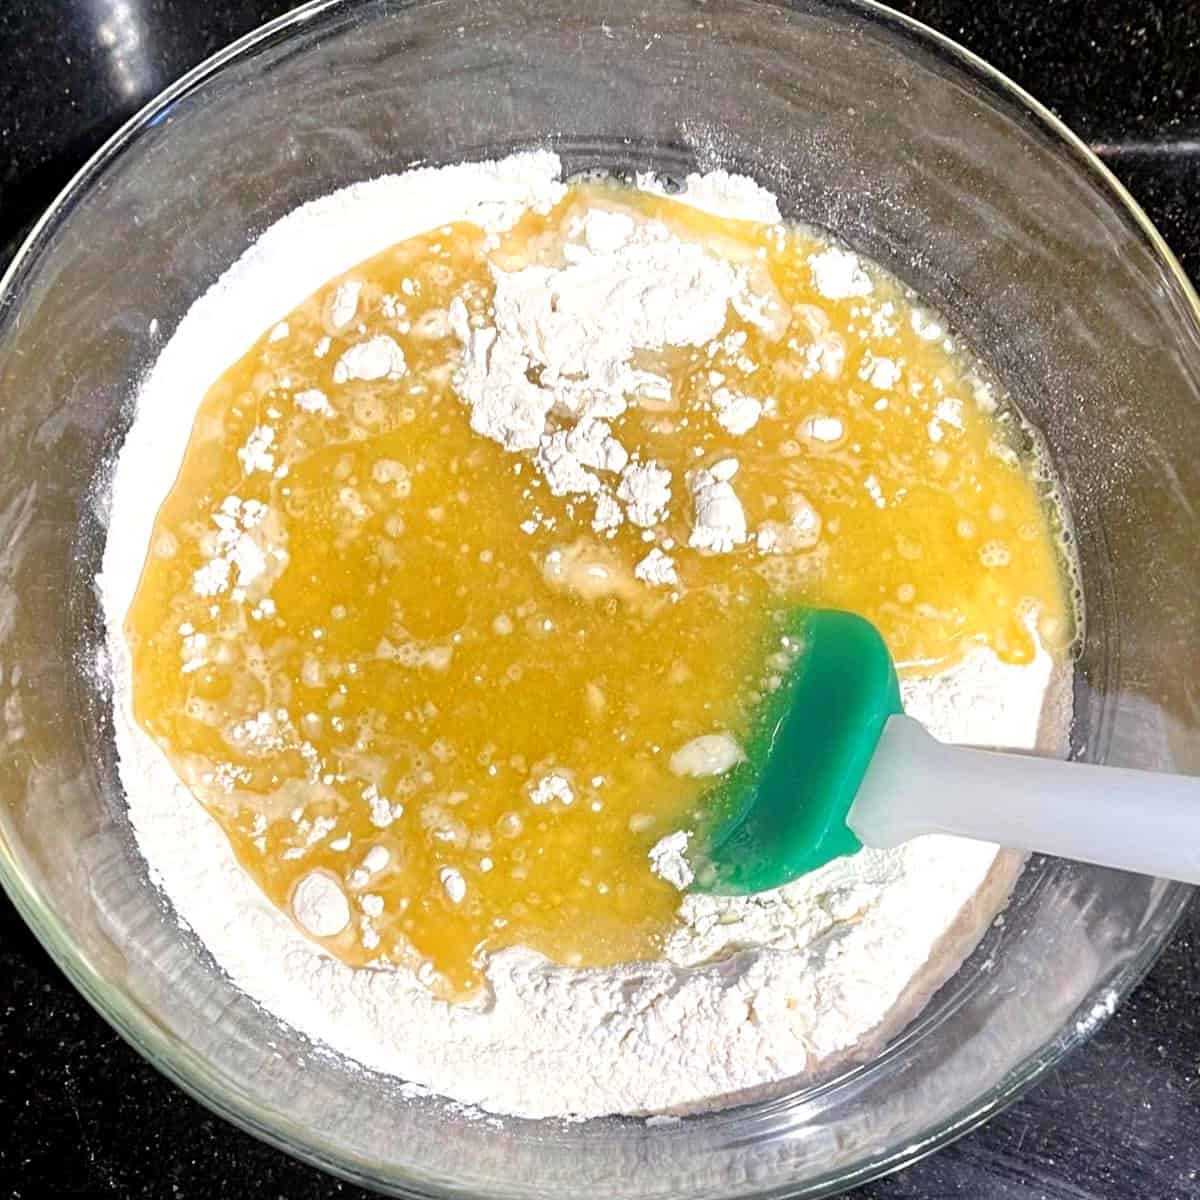 Torra och blöta ingredienser till vaniljcupcakes i skål med spatel.